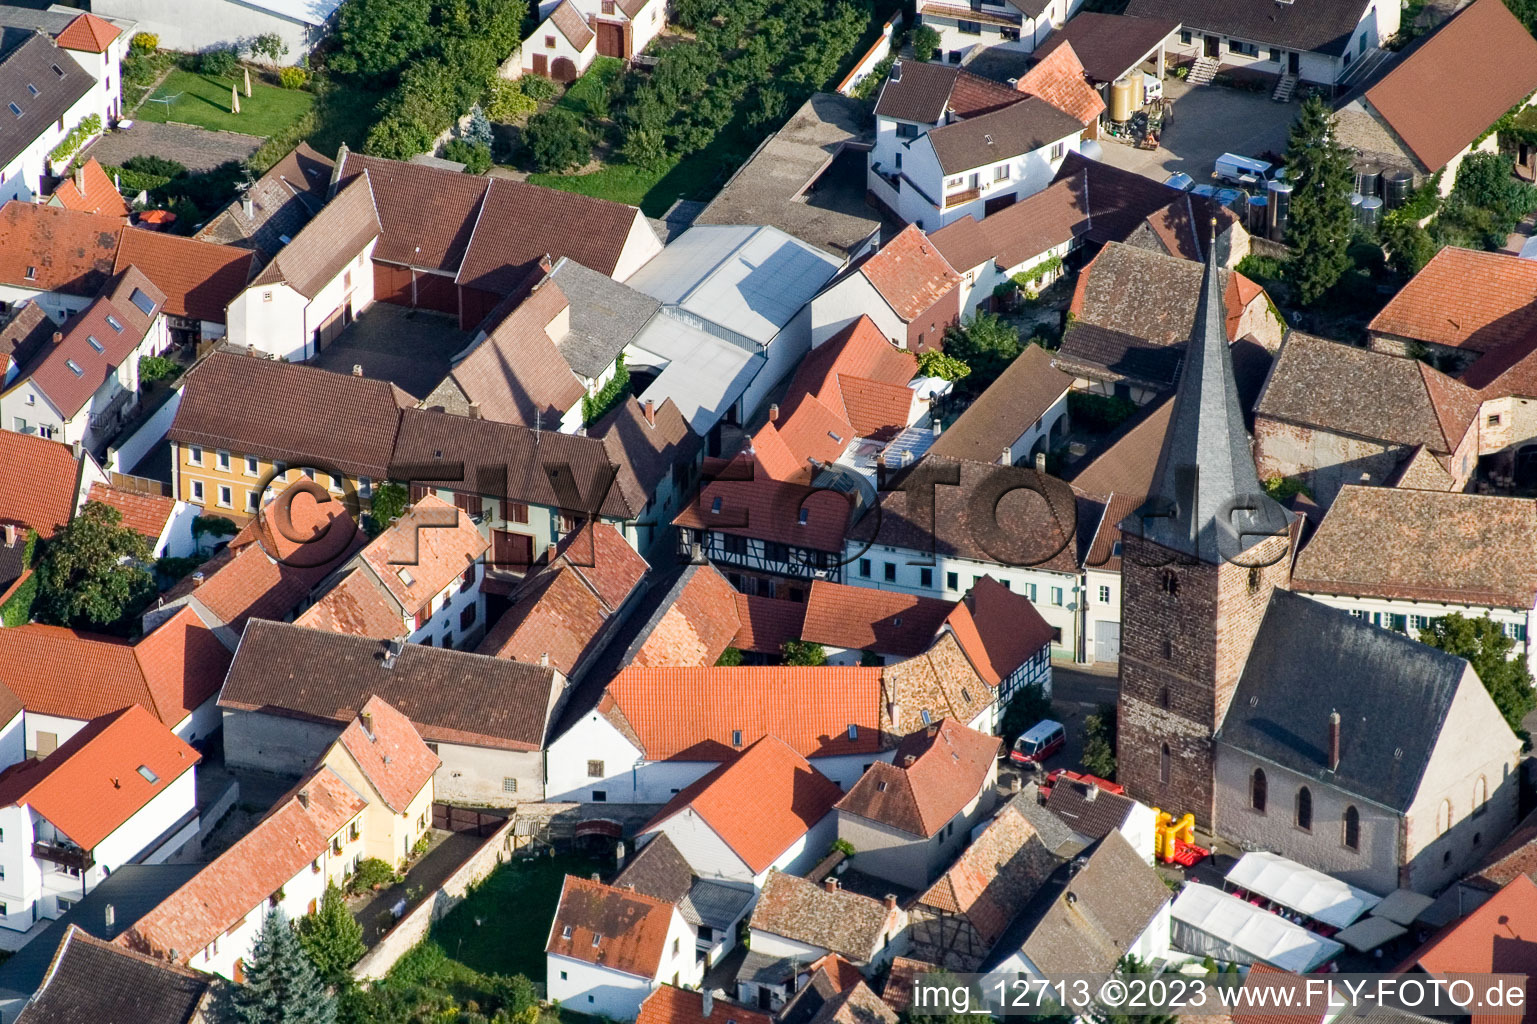 Großkarlbach im Bundesland Rheinland-Pfalz, Deutschland aus der Drohnenperspektive